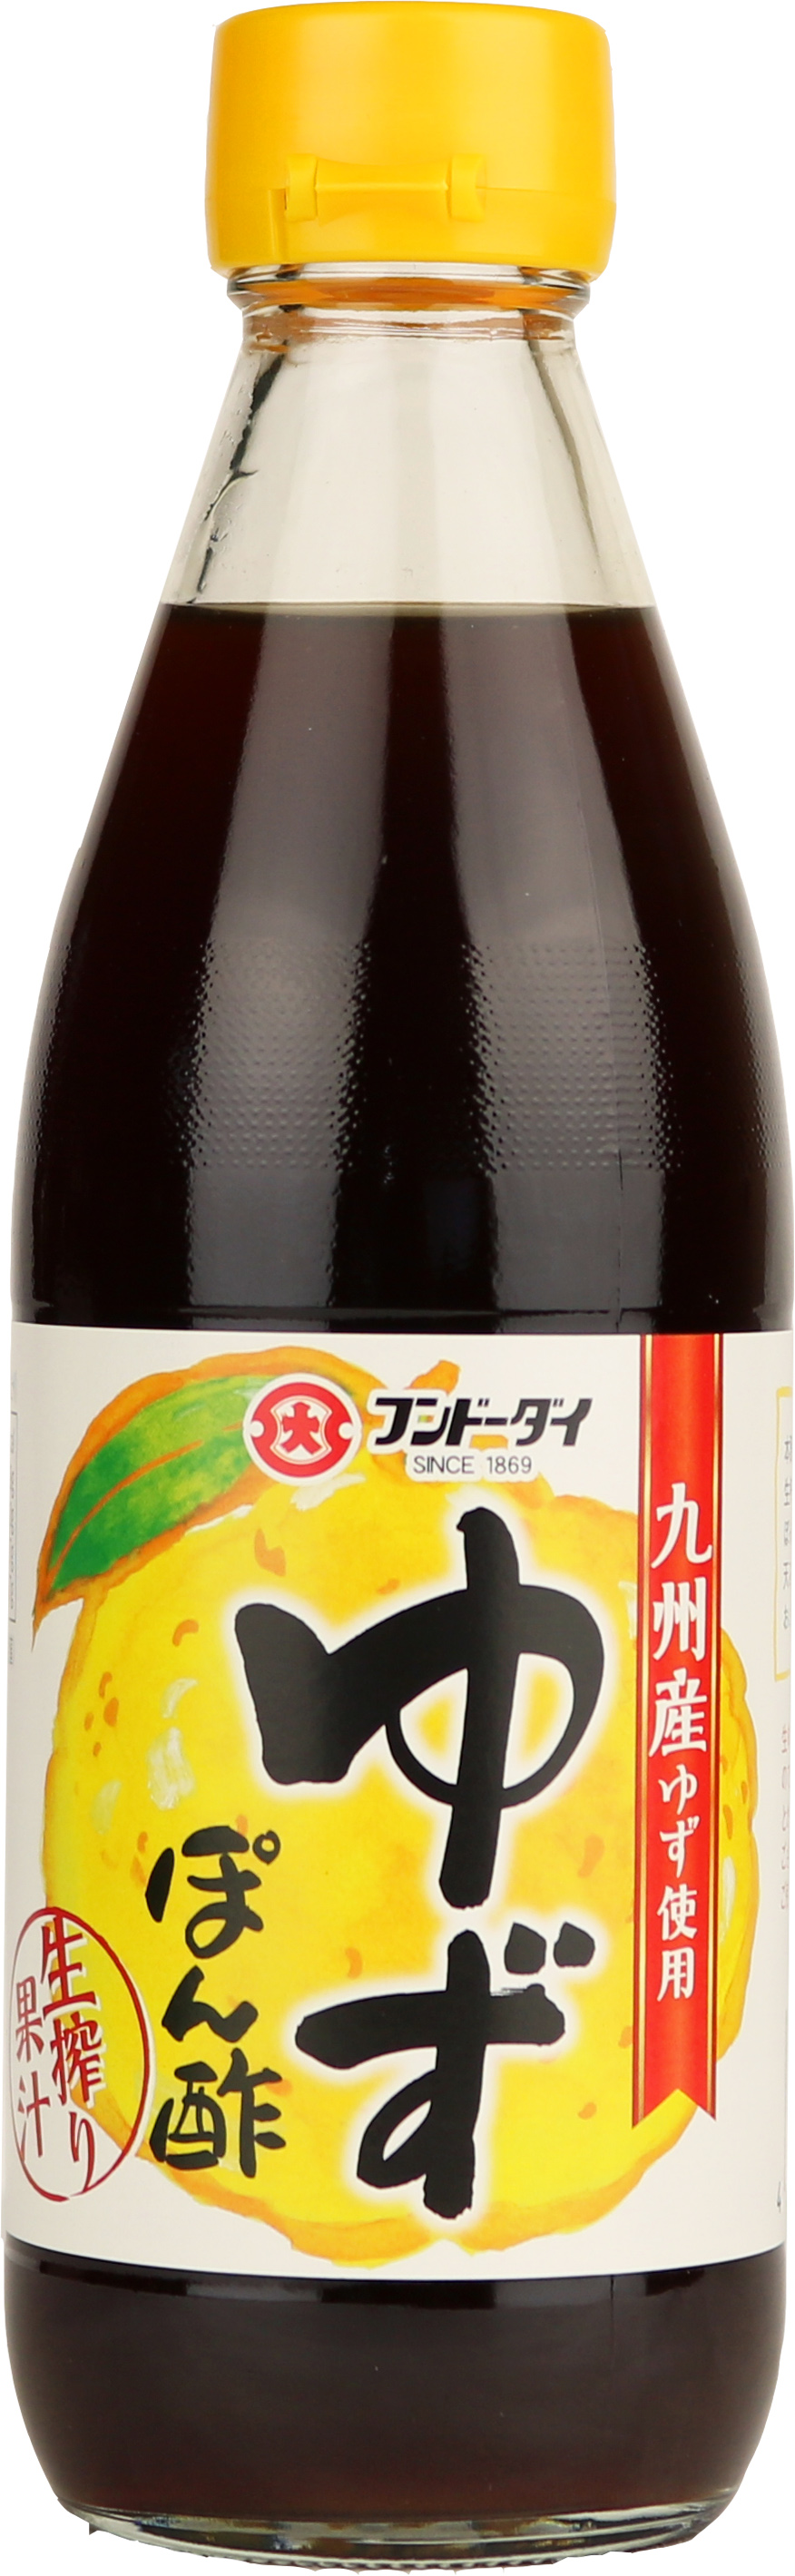 Yuzu Ponzu Vinegar 360ml Bottle